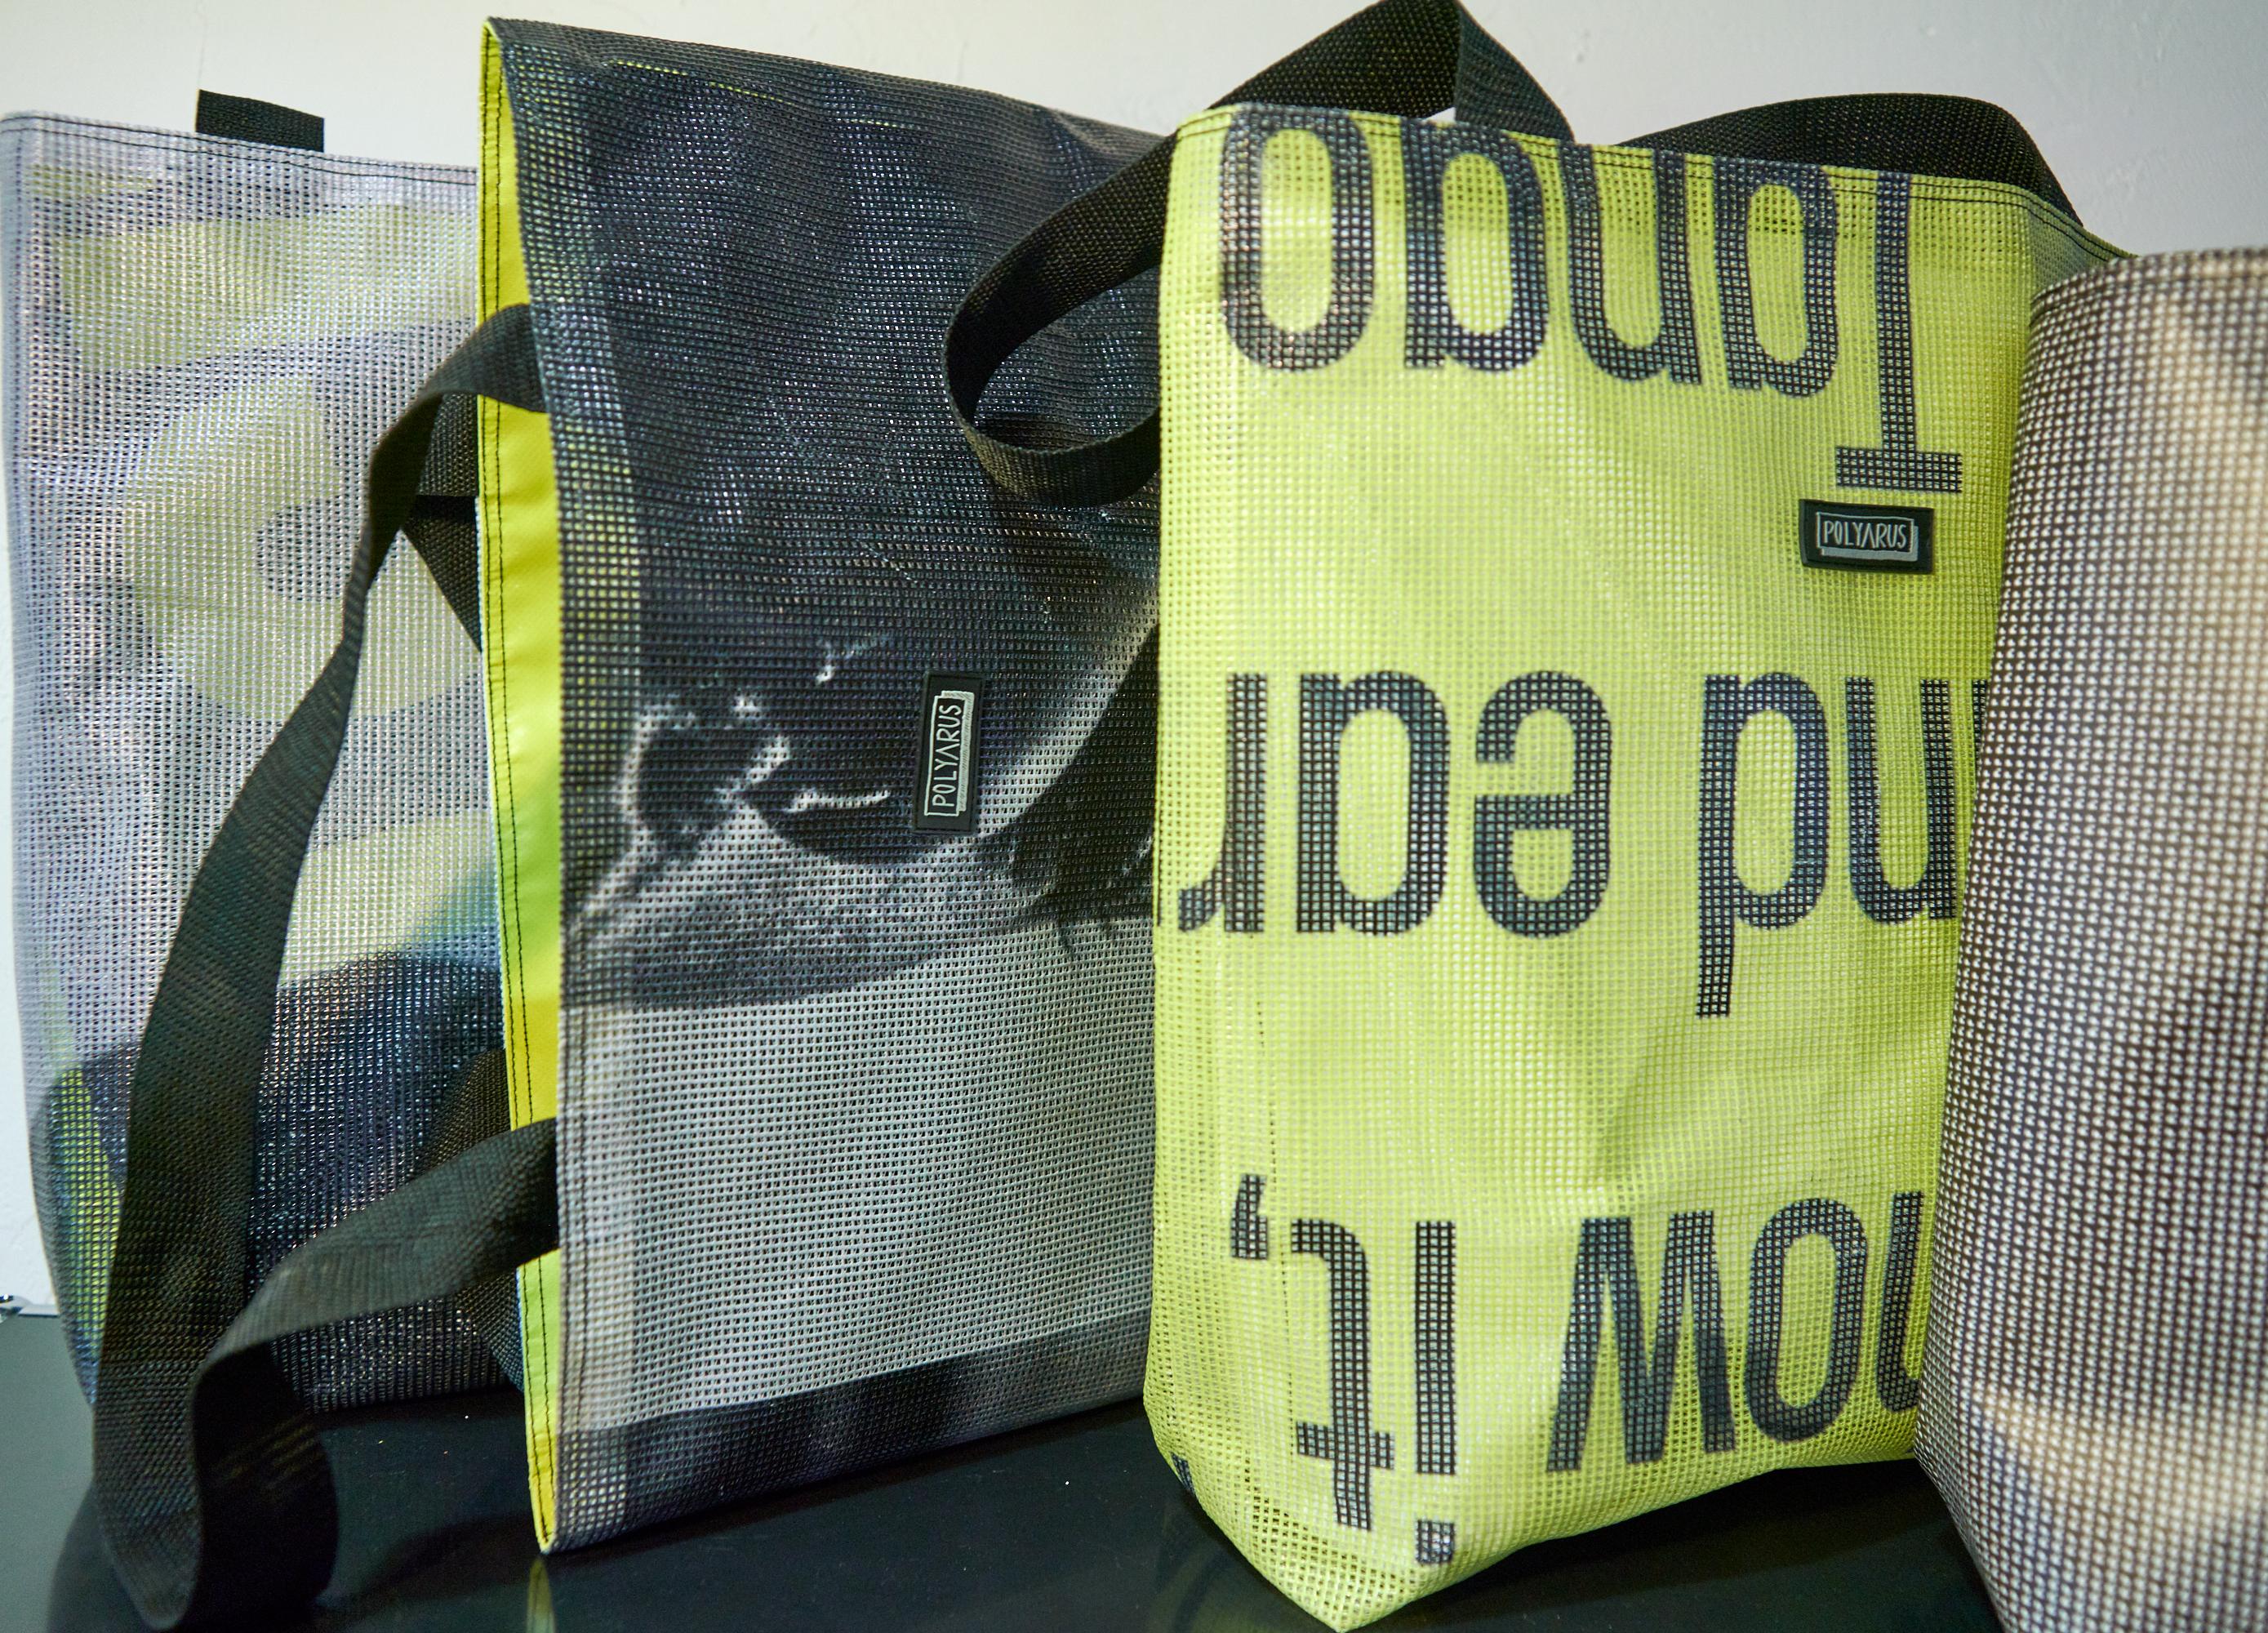 Upcycle проект агентства Louder: как из баннеров делают сумки-шопперы